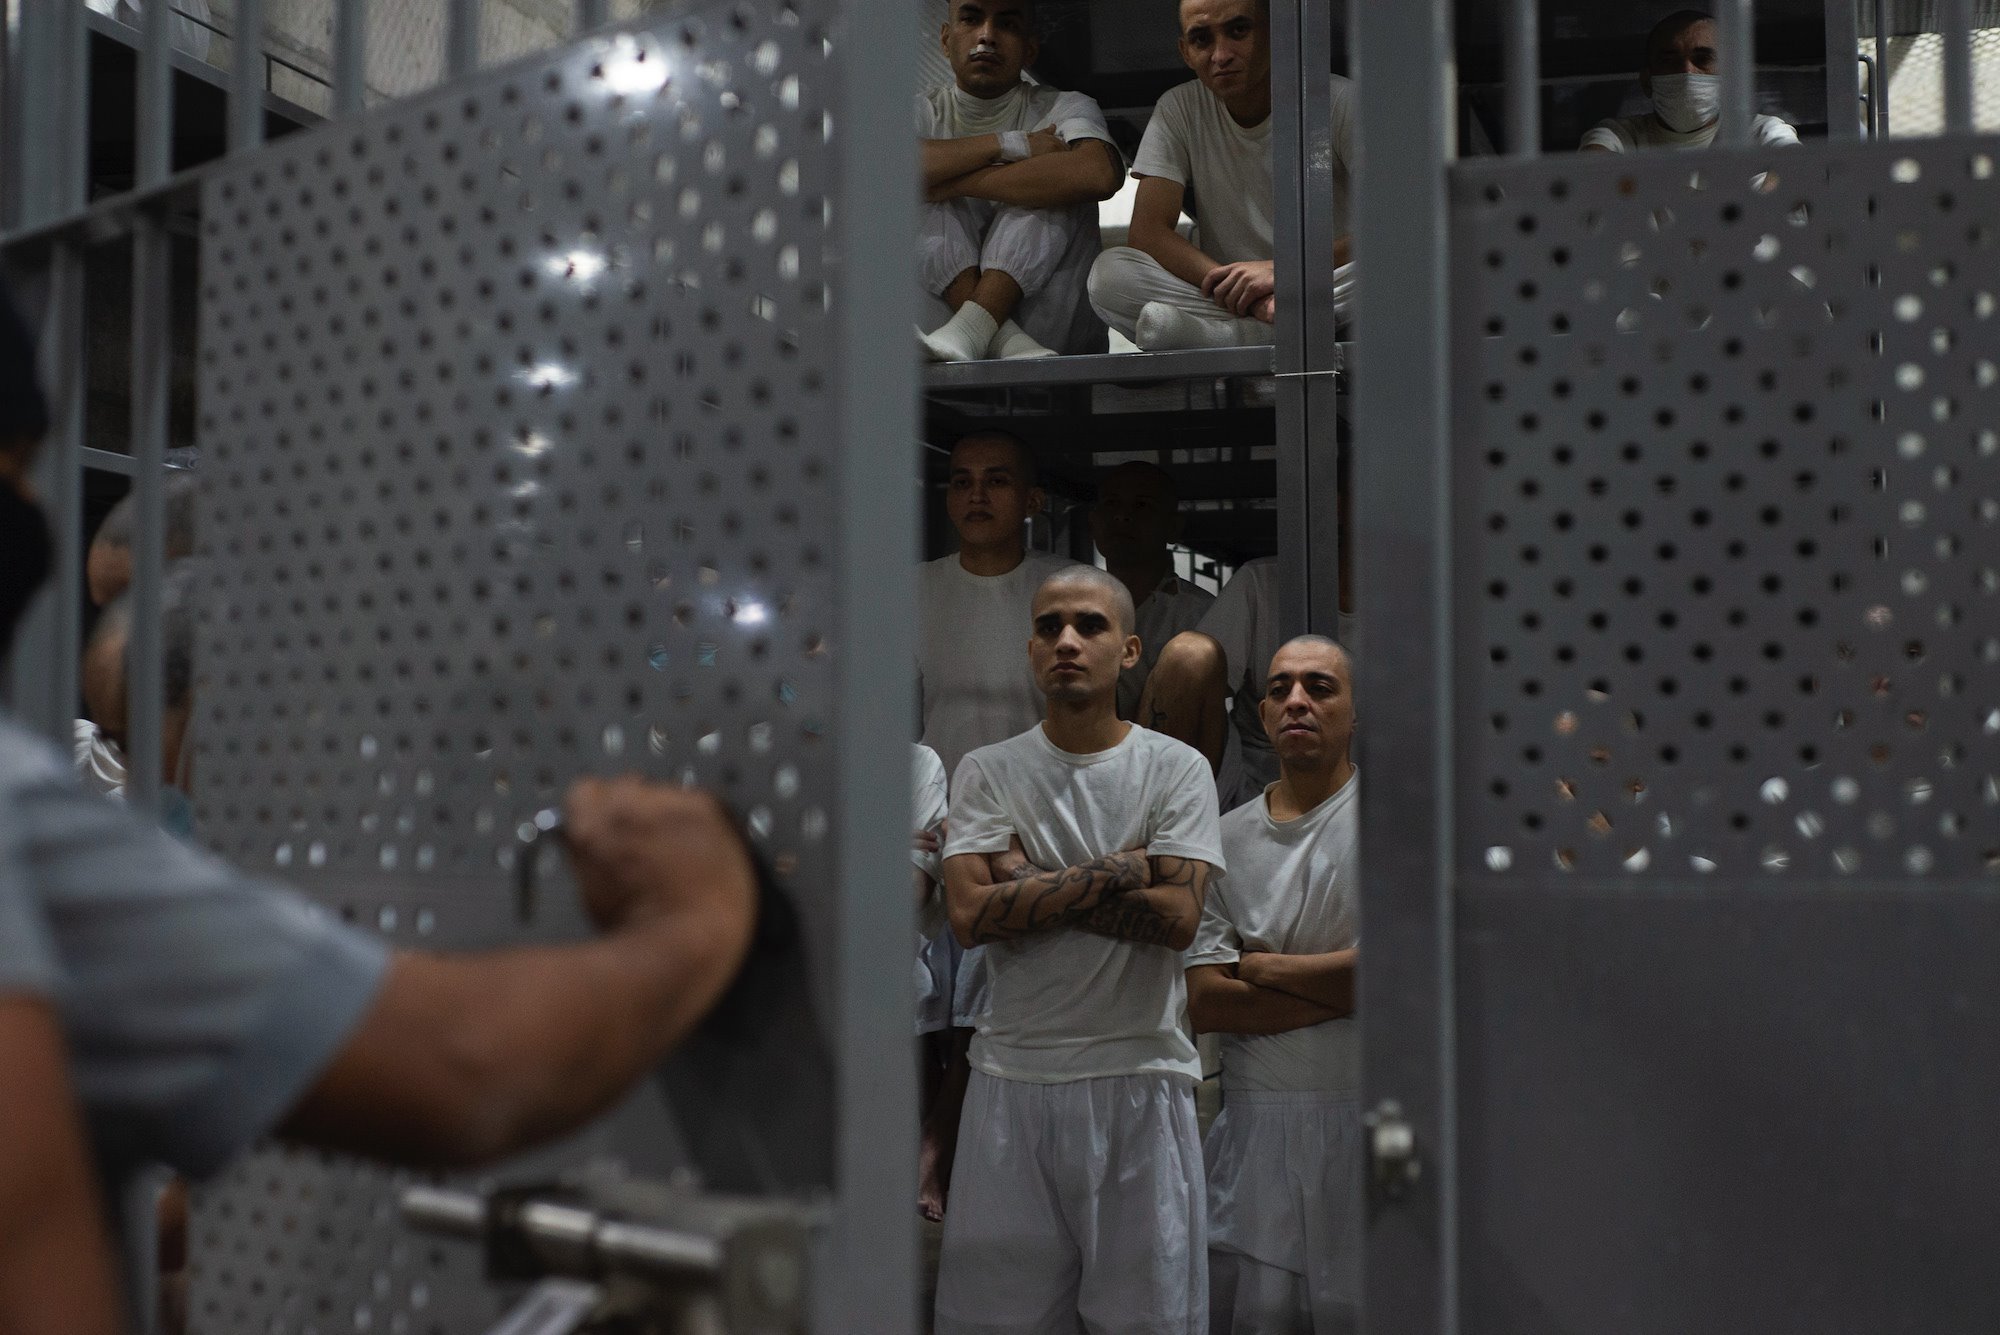 Zatvorenici u CEROT-u provede u æelijama sve vreme tokom dana sem 30 minuta/Lissette Lemus/BBC